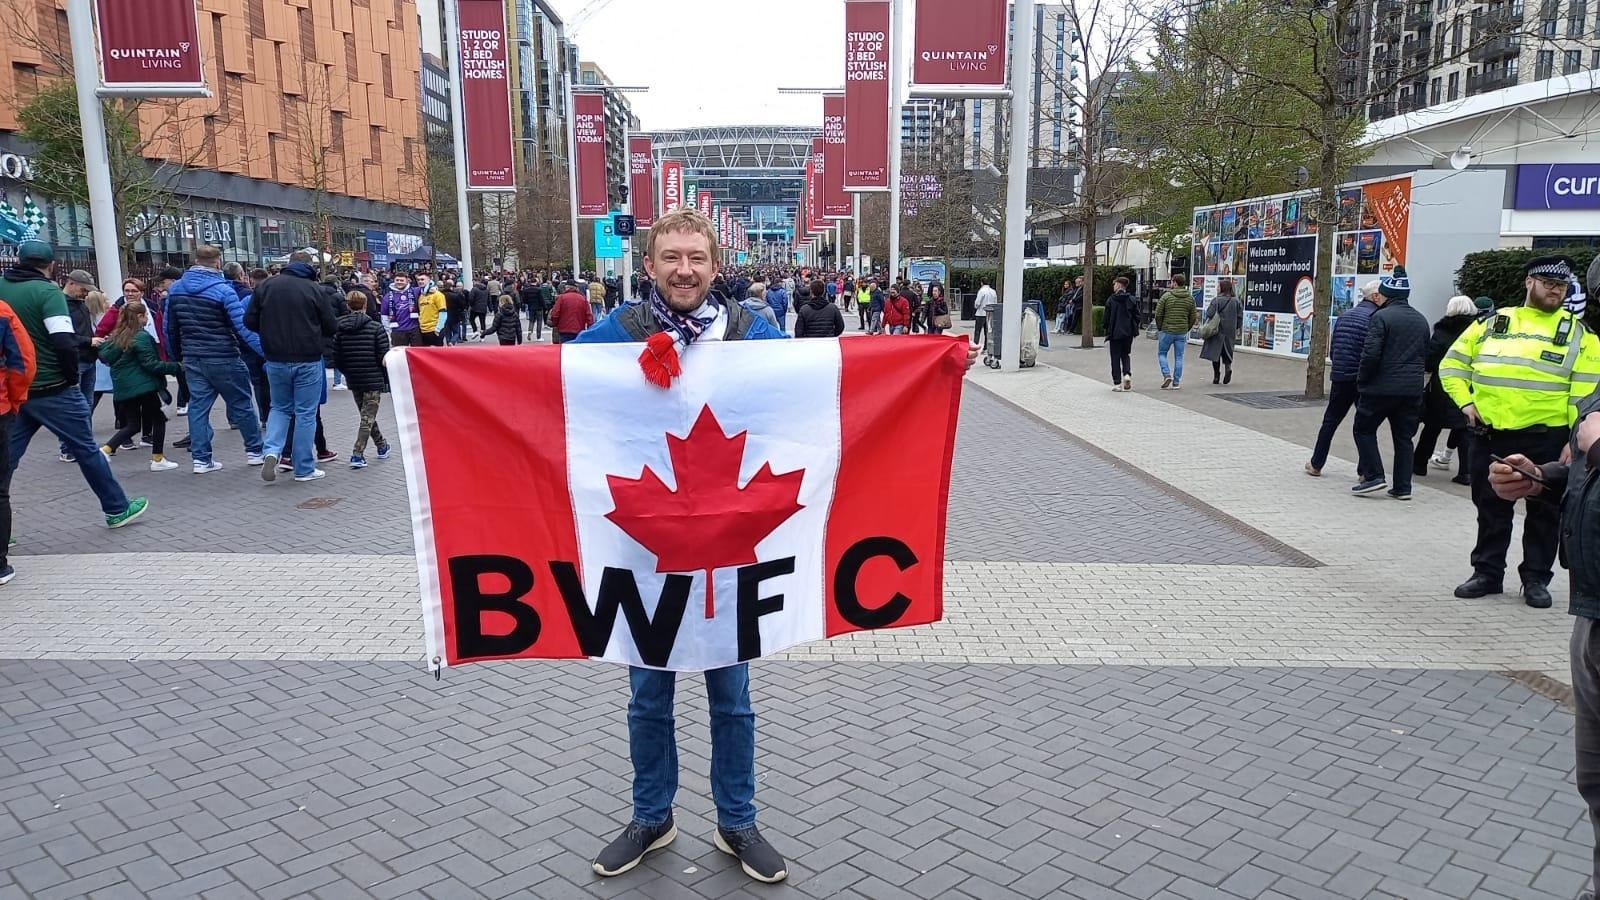 Wanderers fans outside Wembley